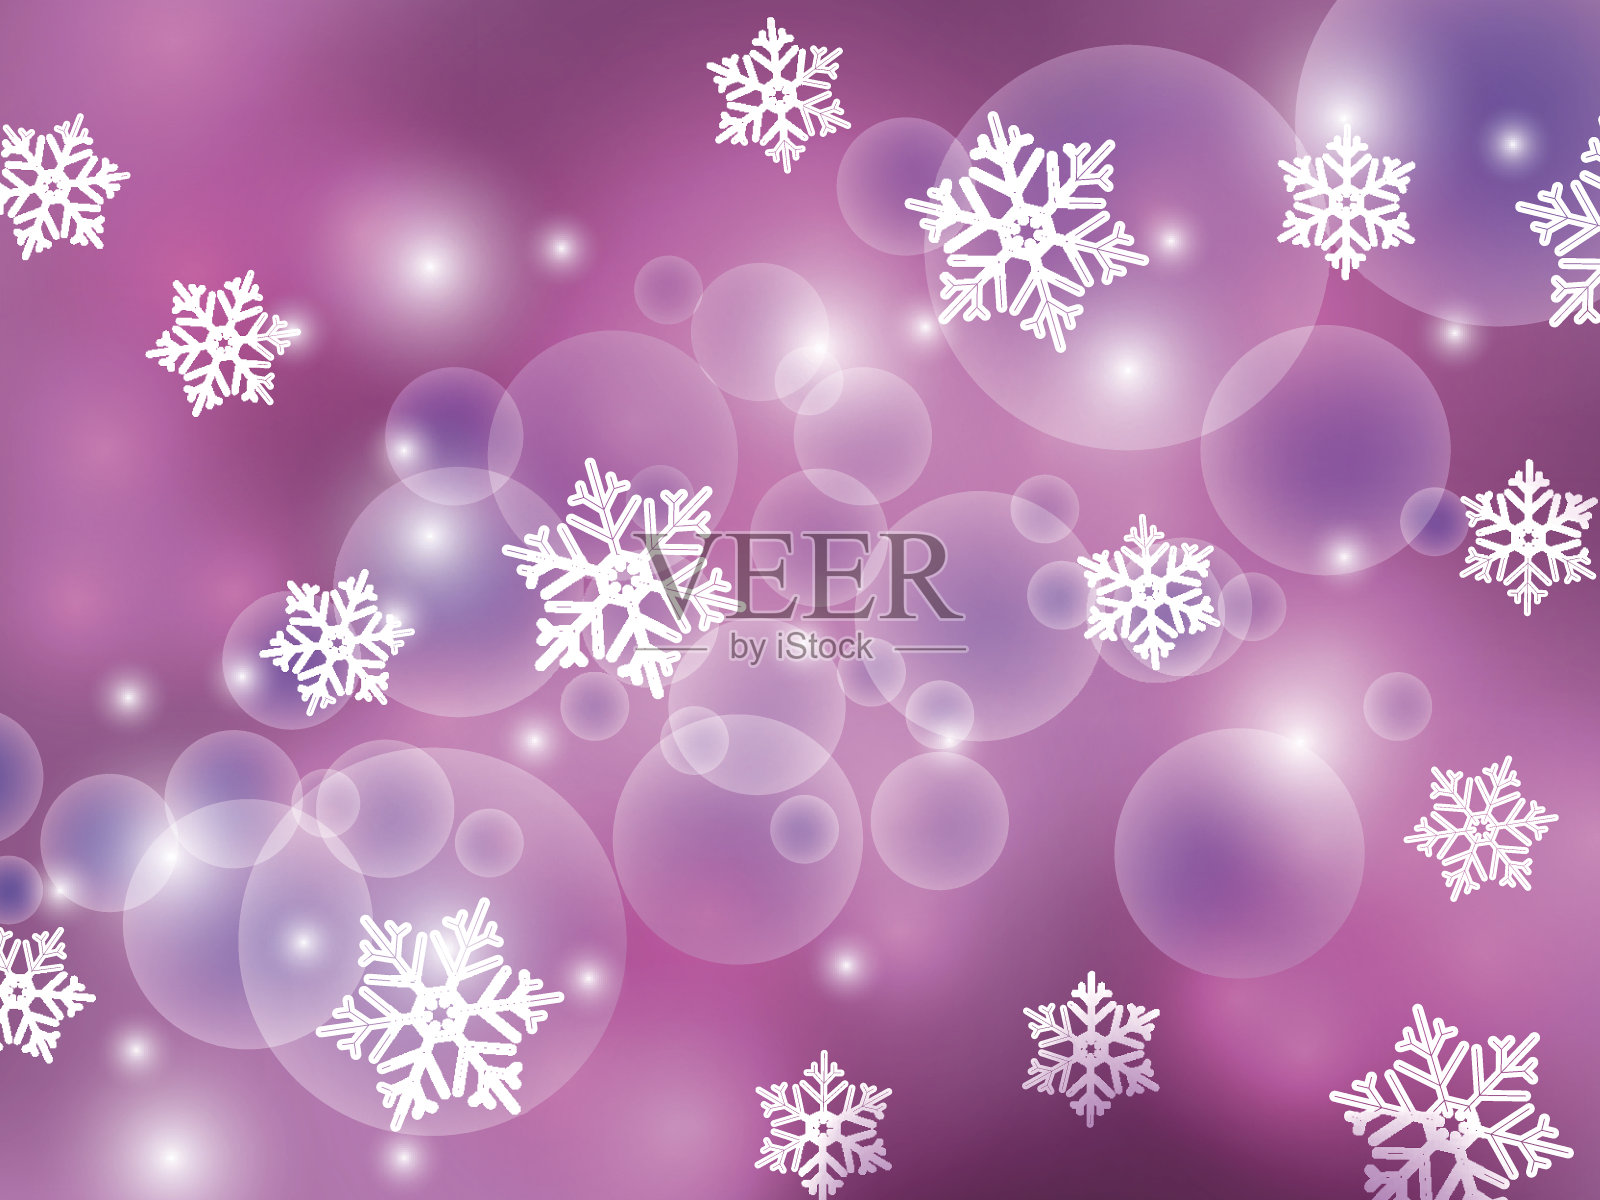 超过 20 张关于“雪晶花”和“雪晶”的免费图片 - Pixabay